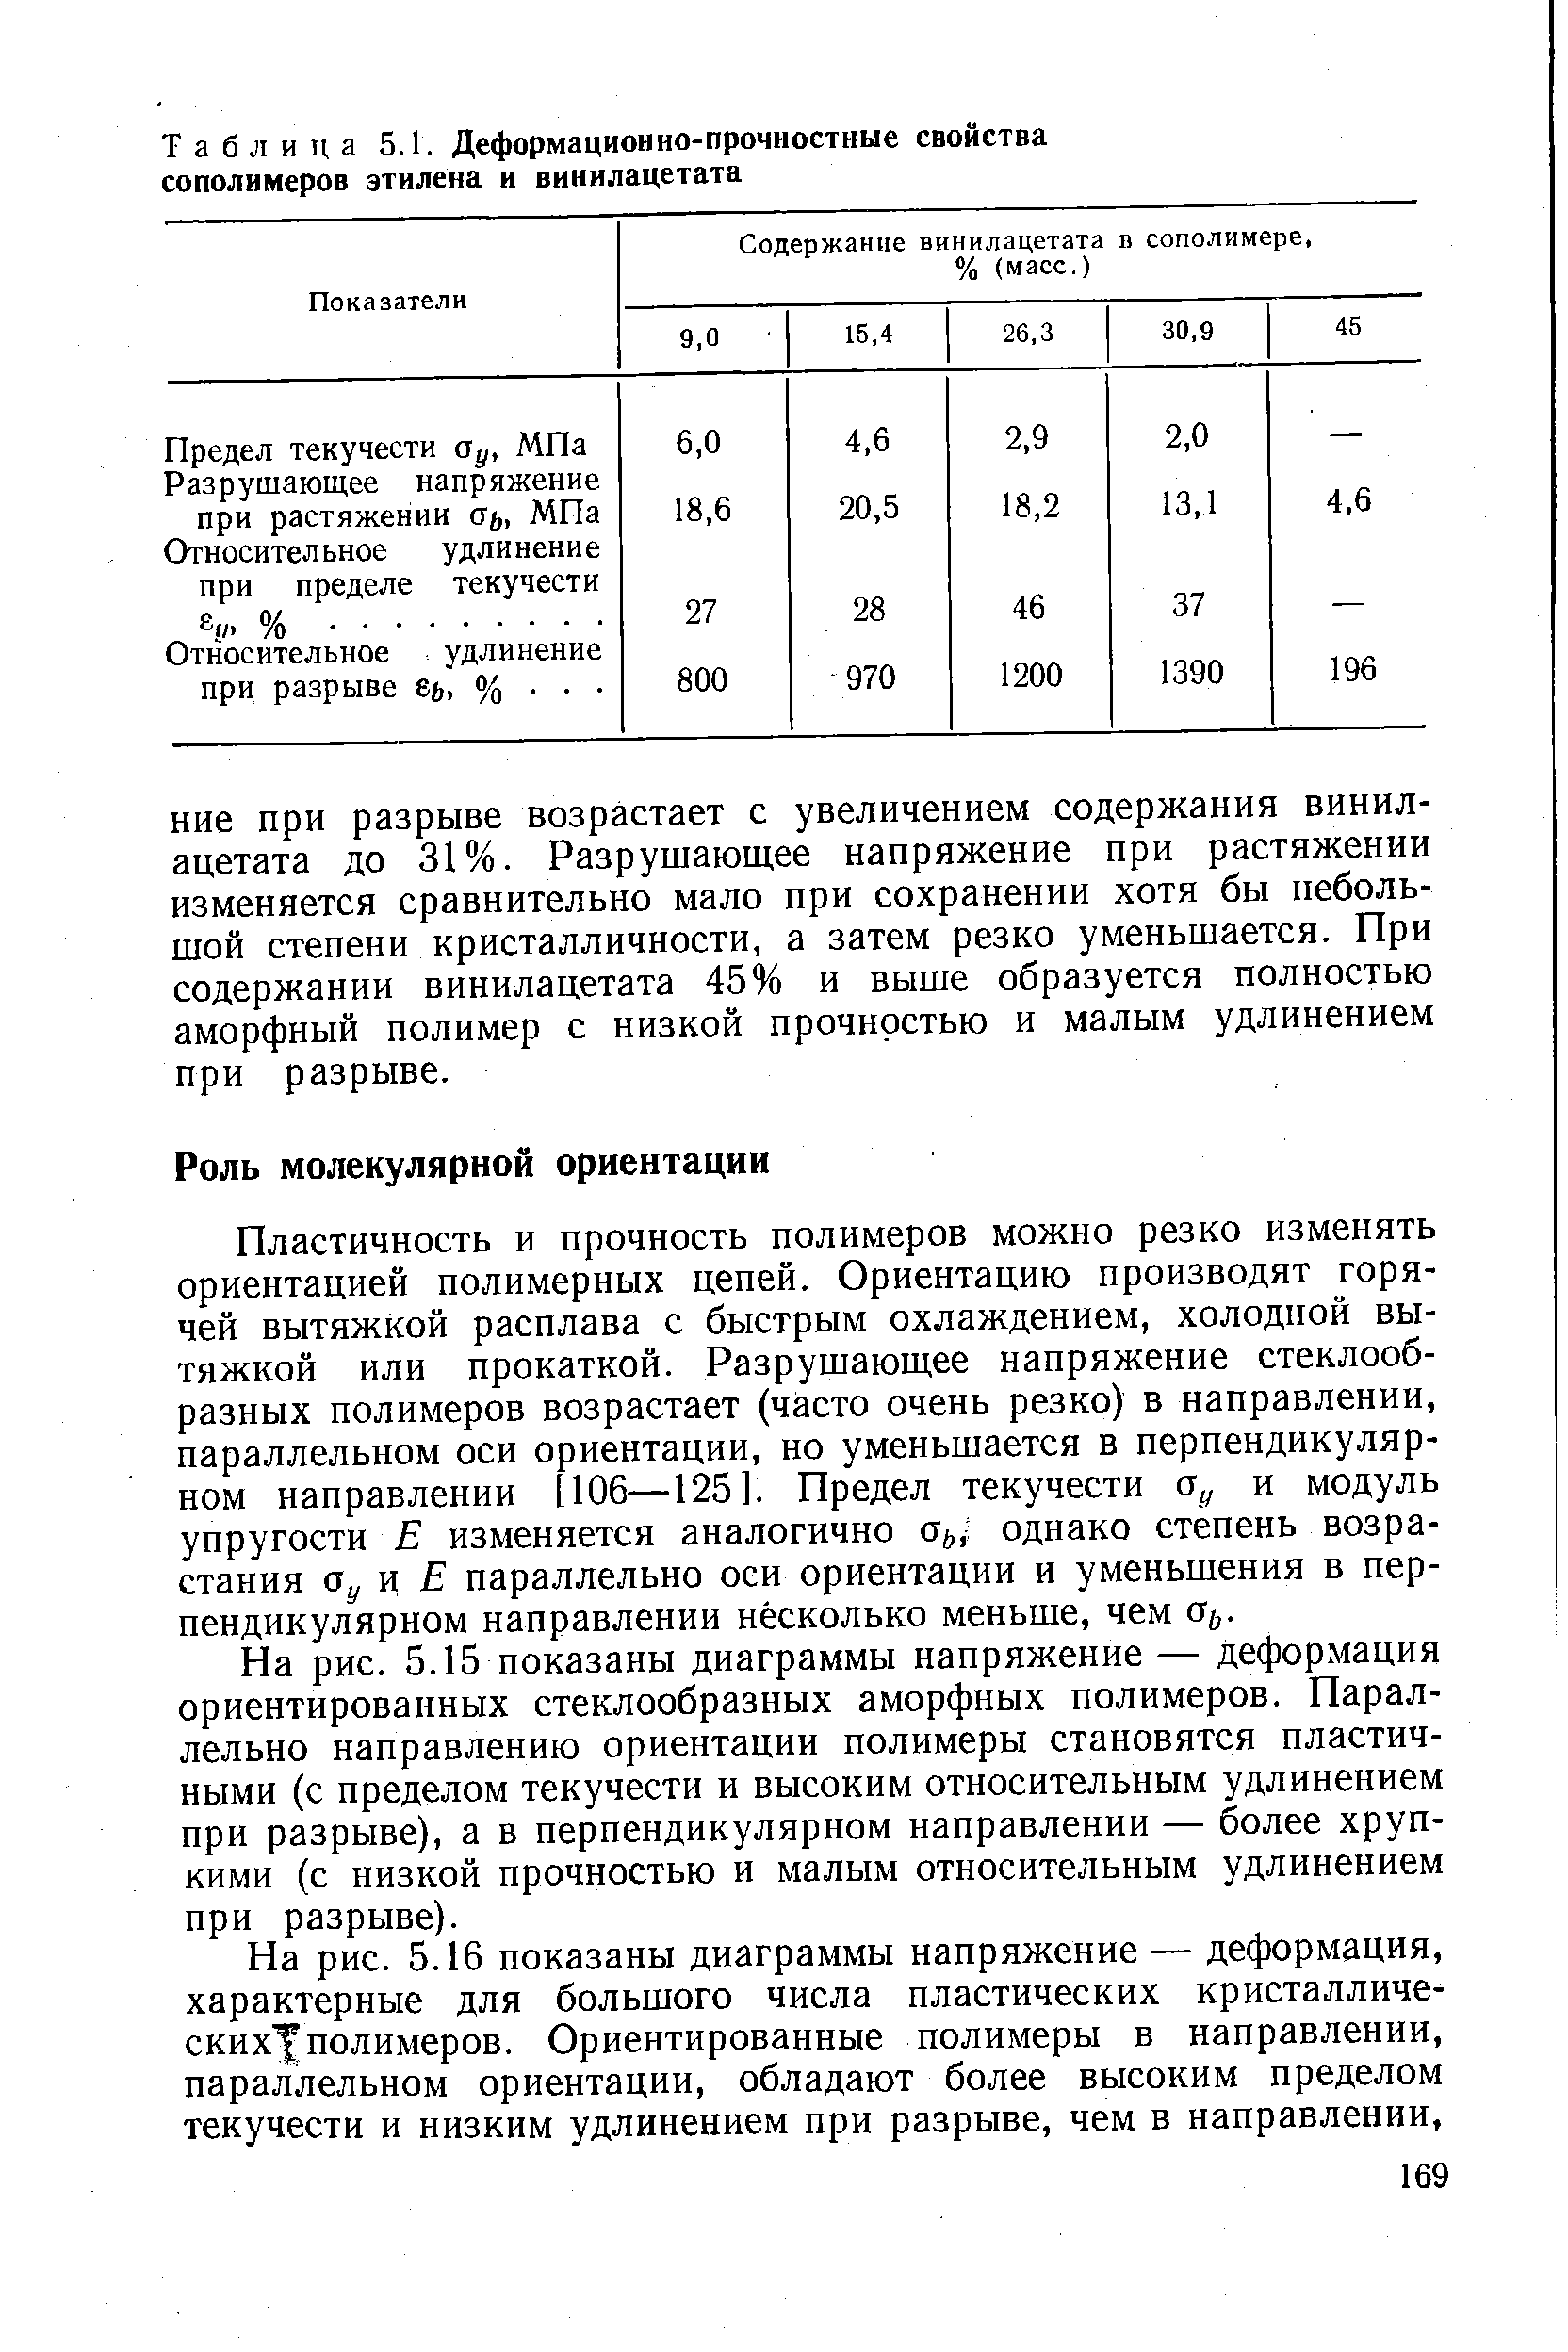 Таблица 5.1. Деформационно-прочностные свойства сополимеров этилена и винилацетата
